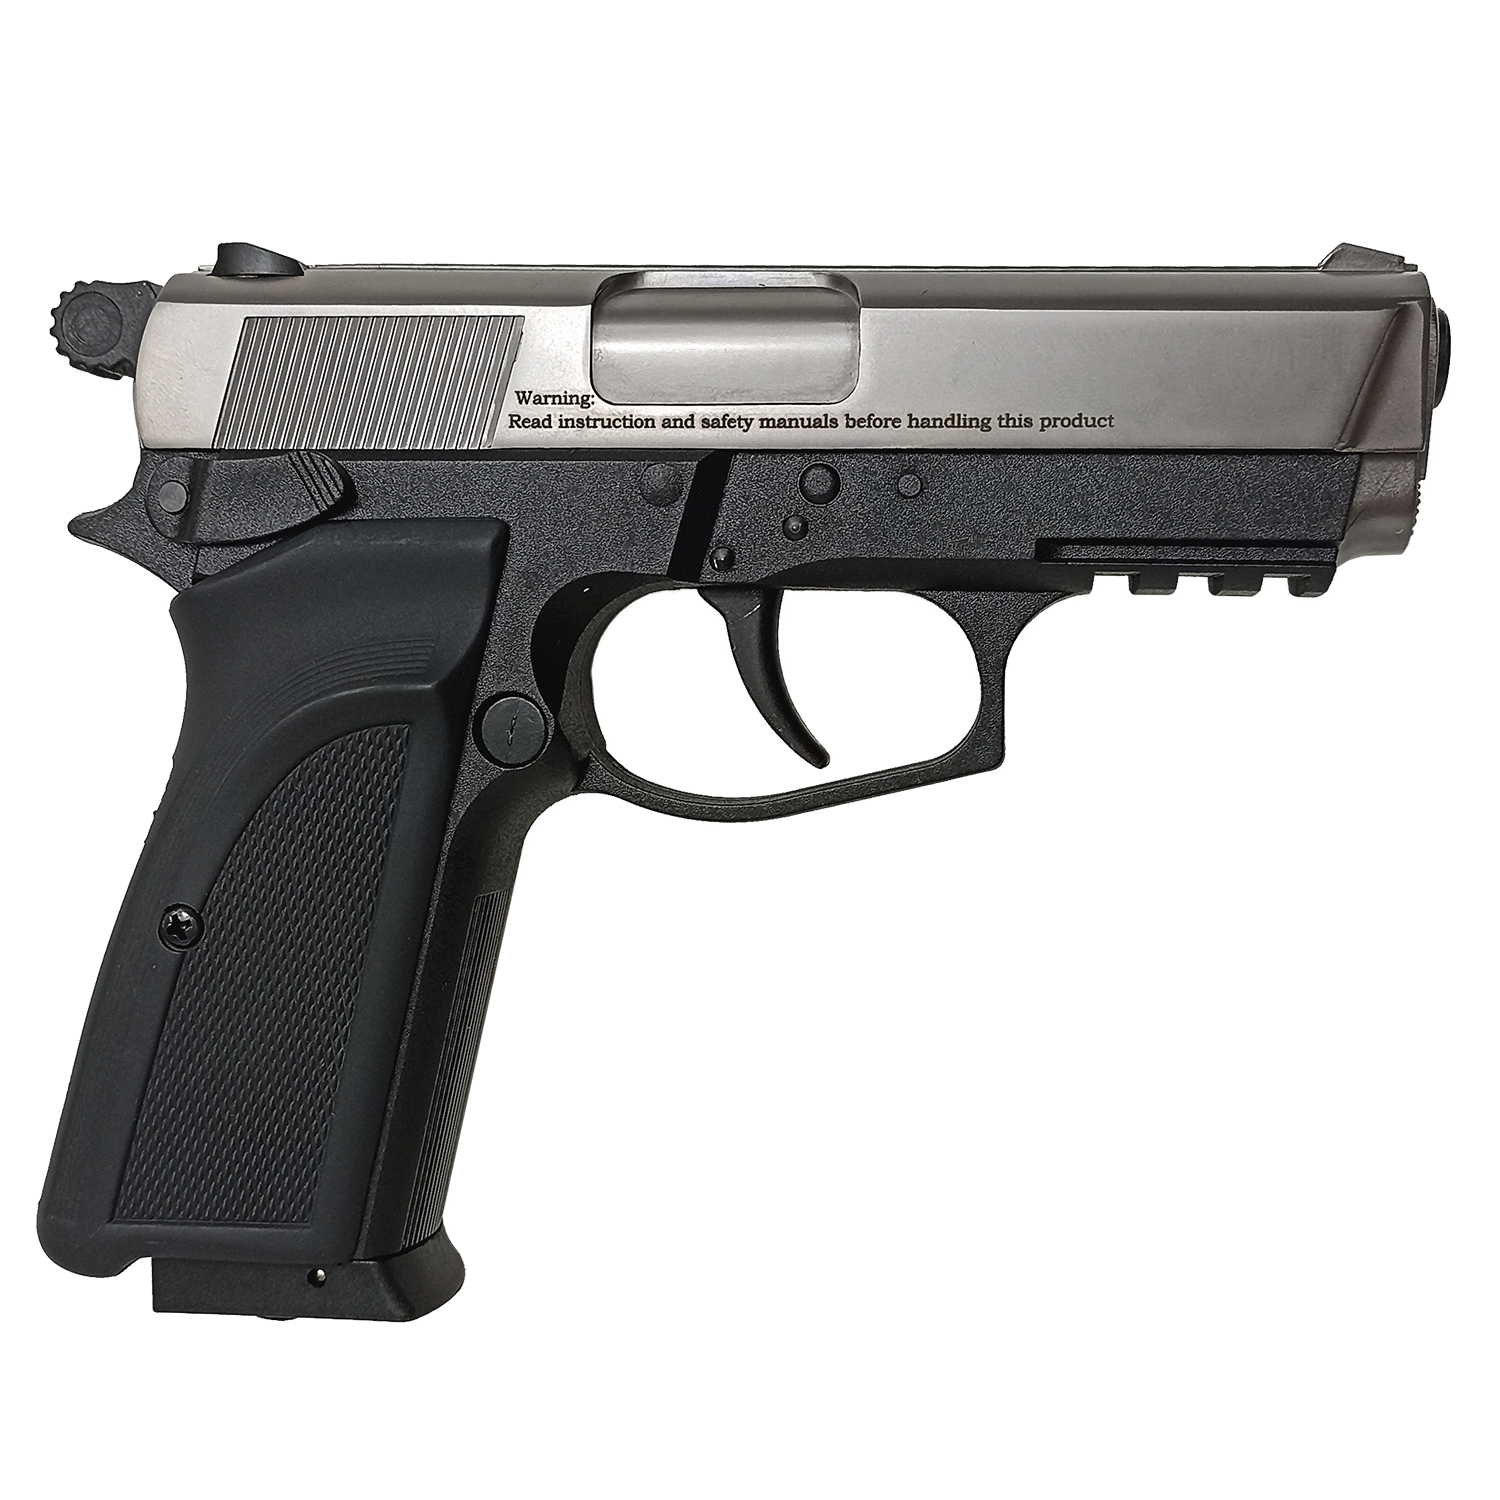 Пистолет пневматический EKOL ES P66 C FUME (никель) калибр 4,5 мм. 3 Дж.